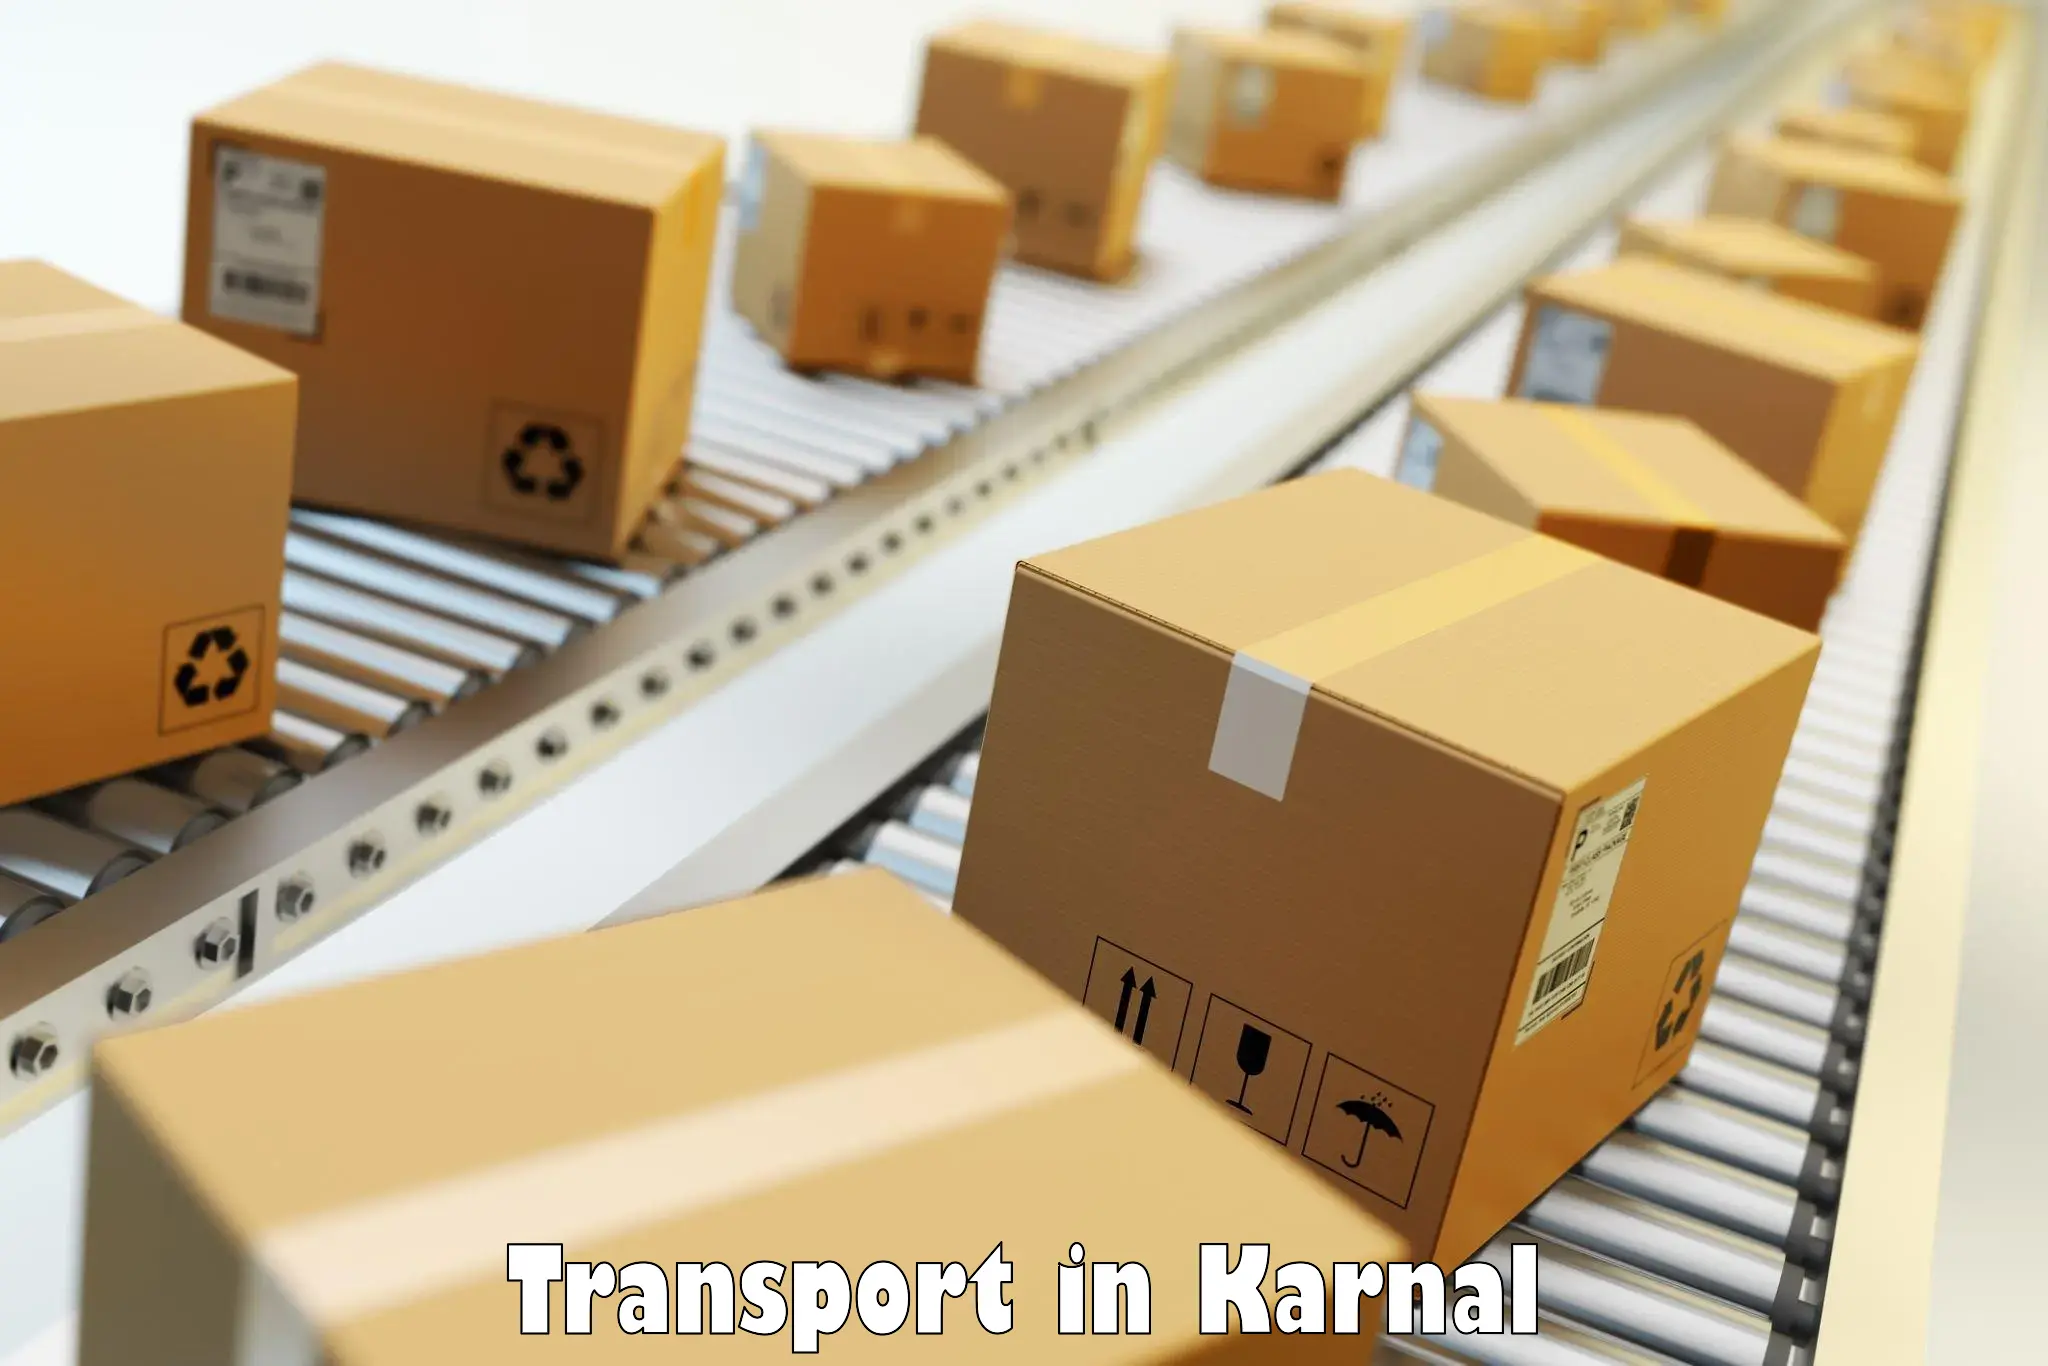 Road transport online services in Karnal